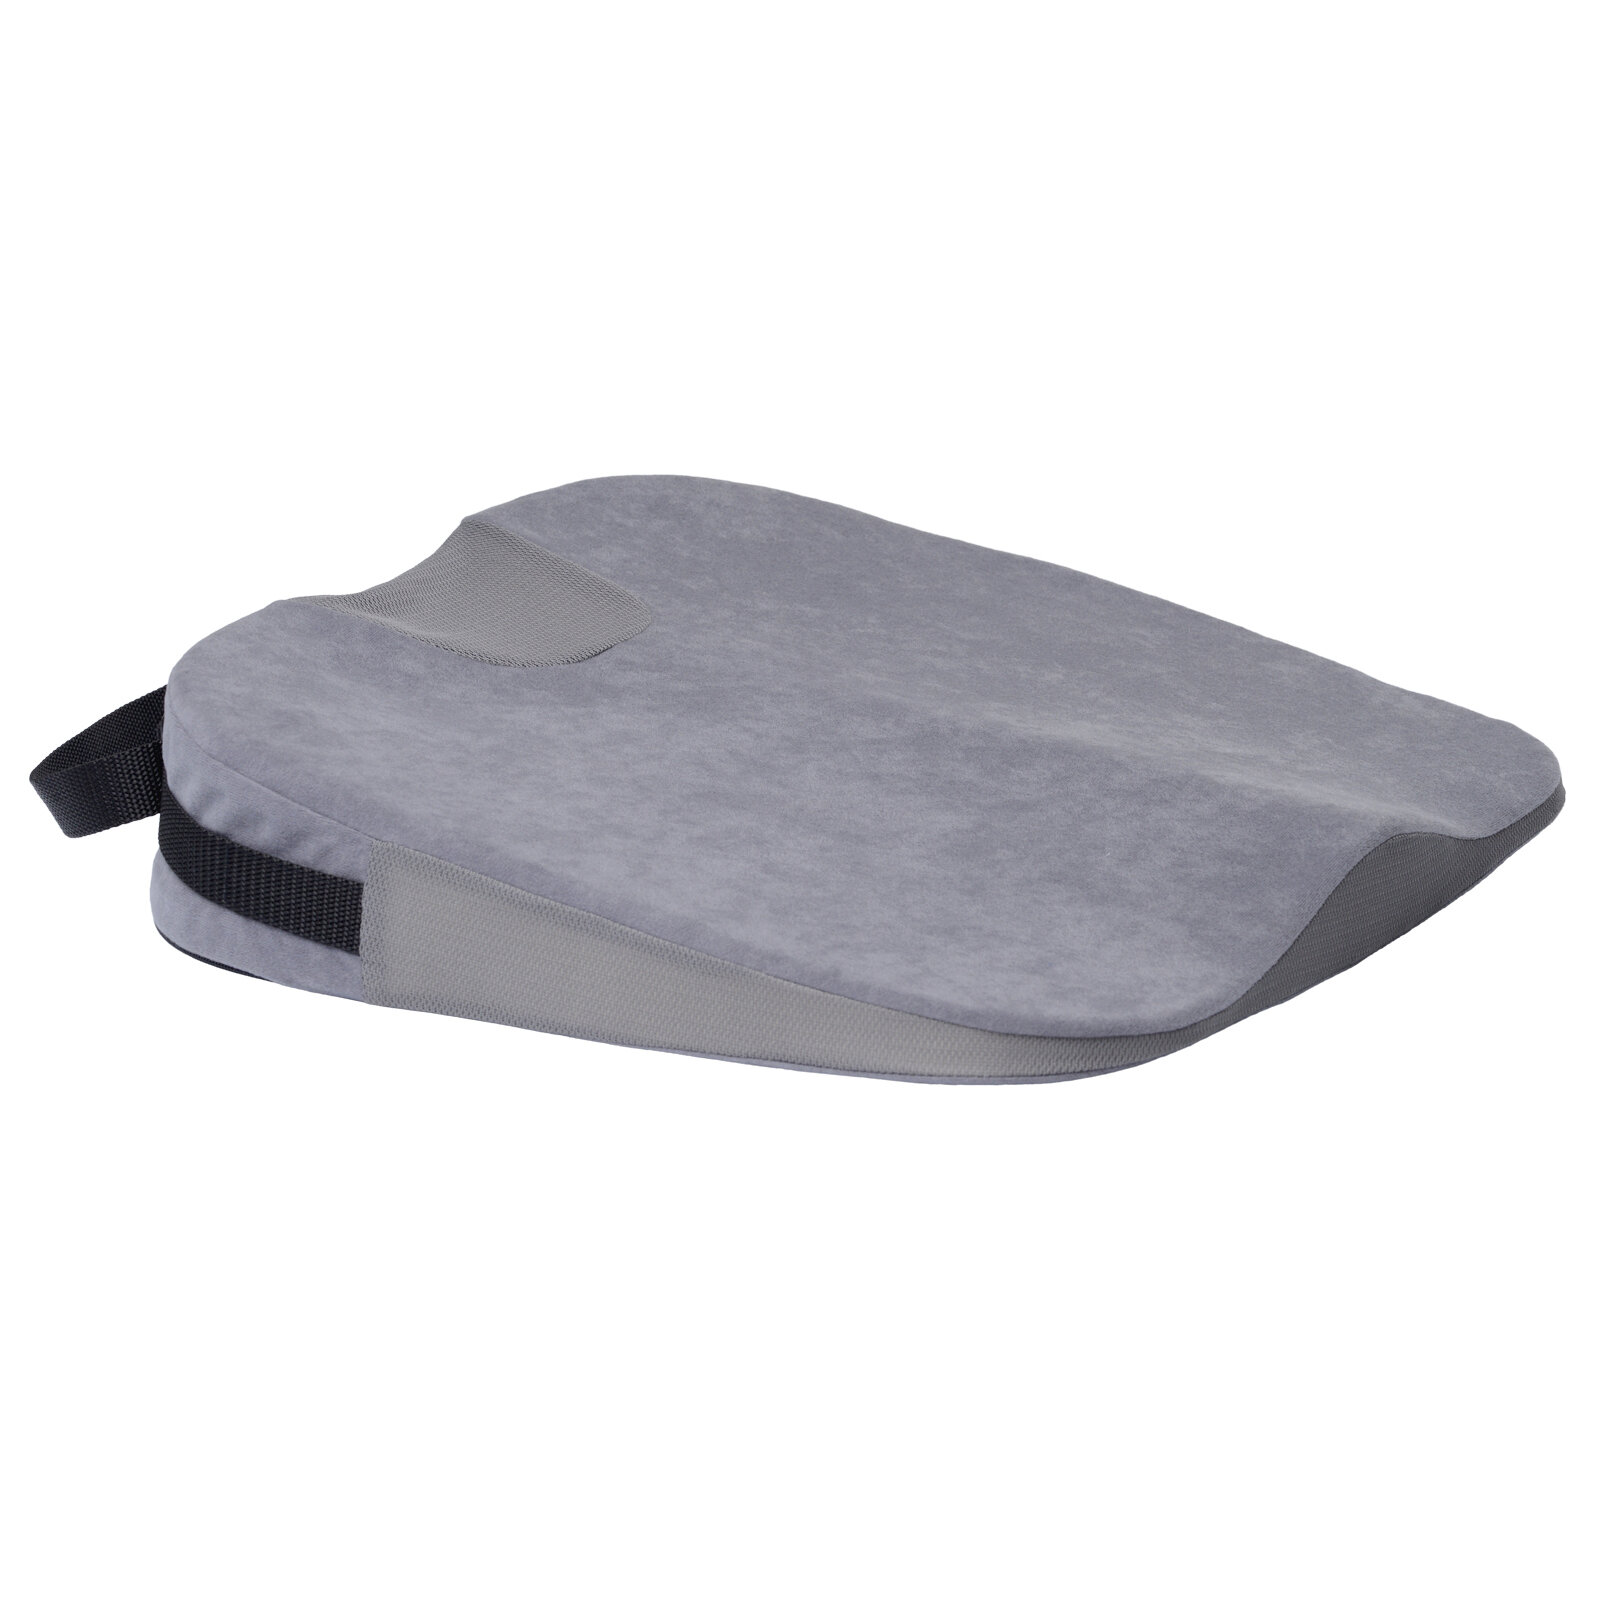 Подушка ортопедическая Trelax Spectra Seat П17, серый